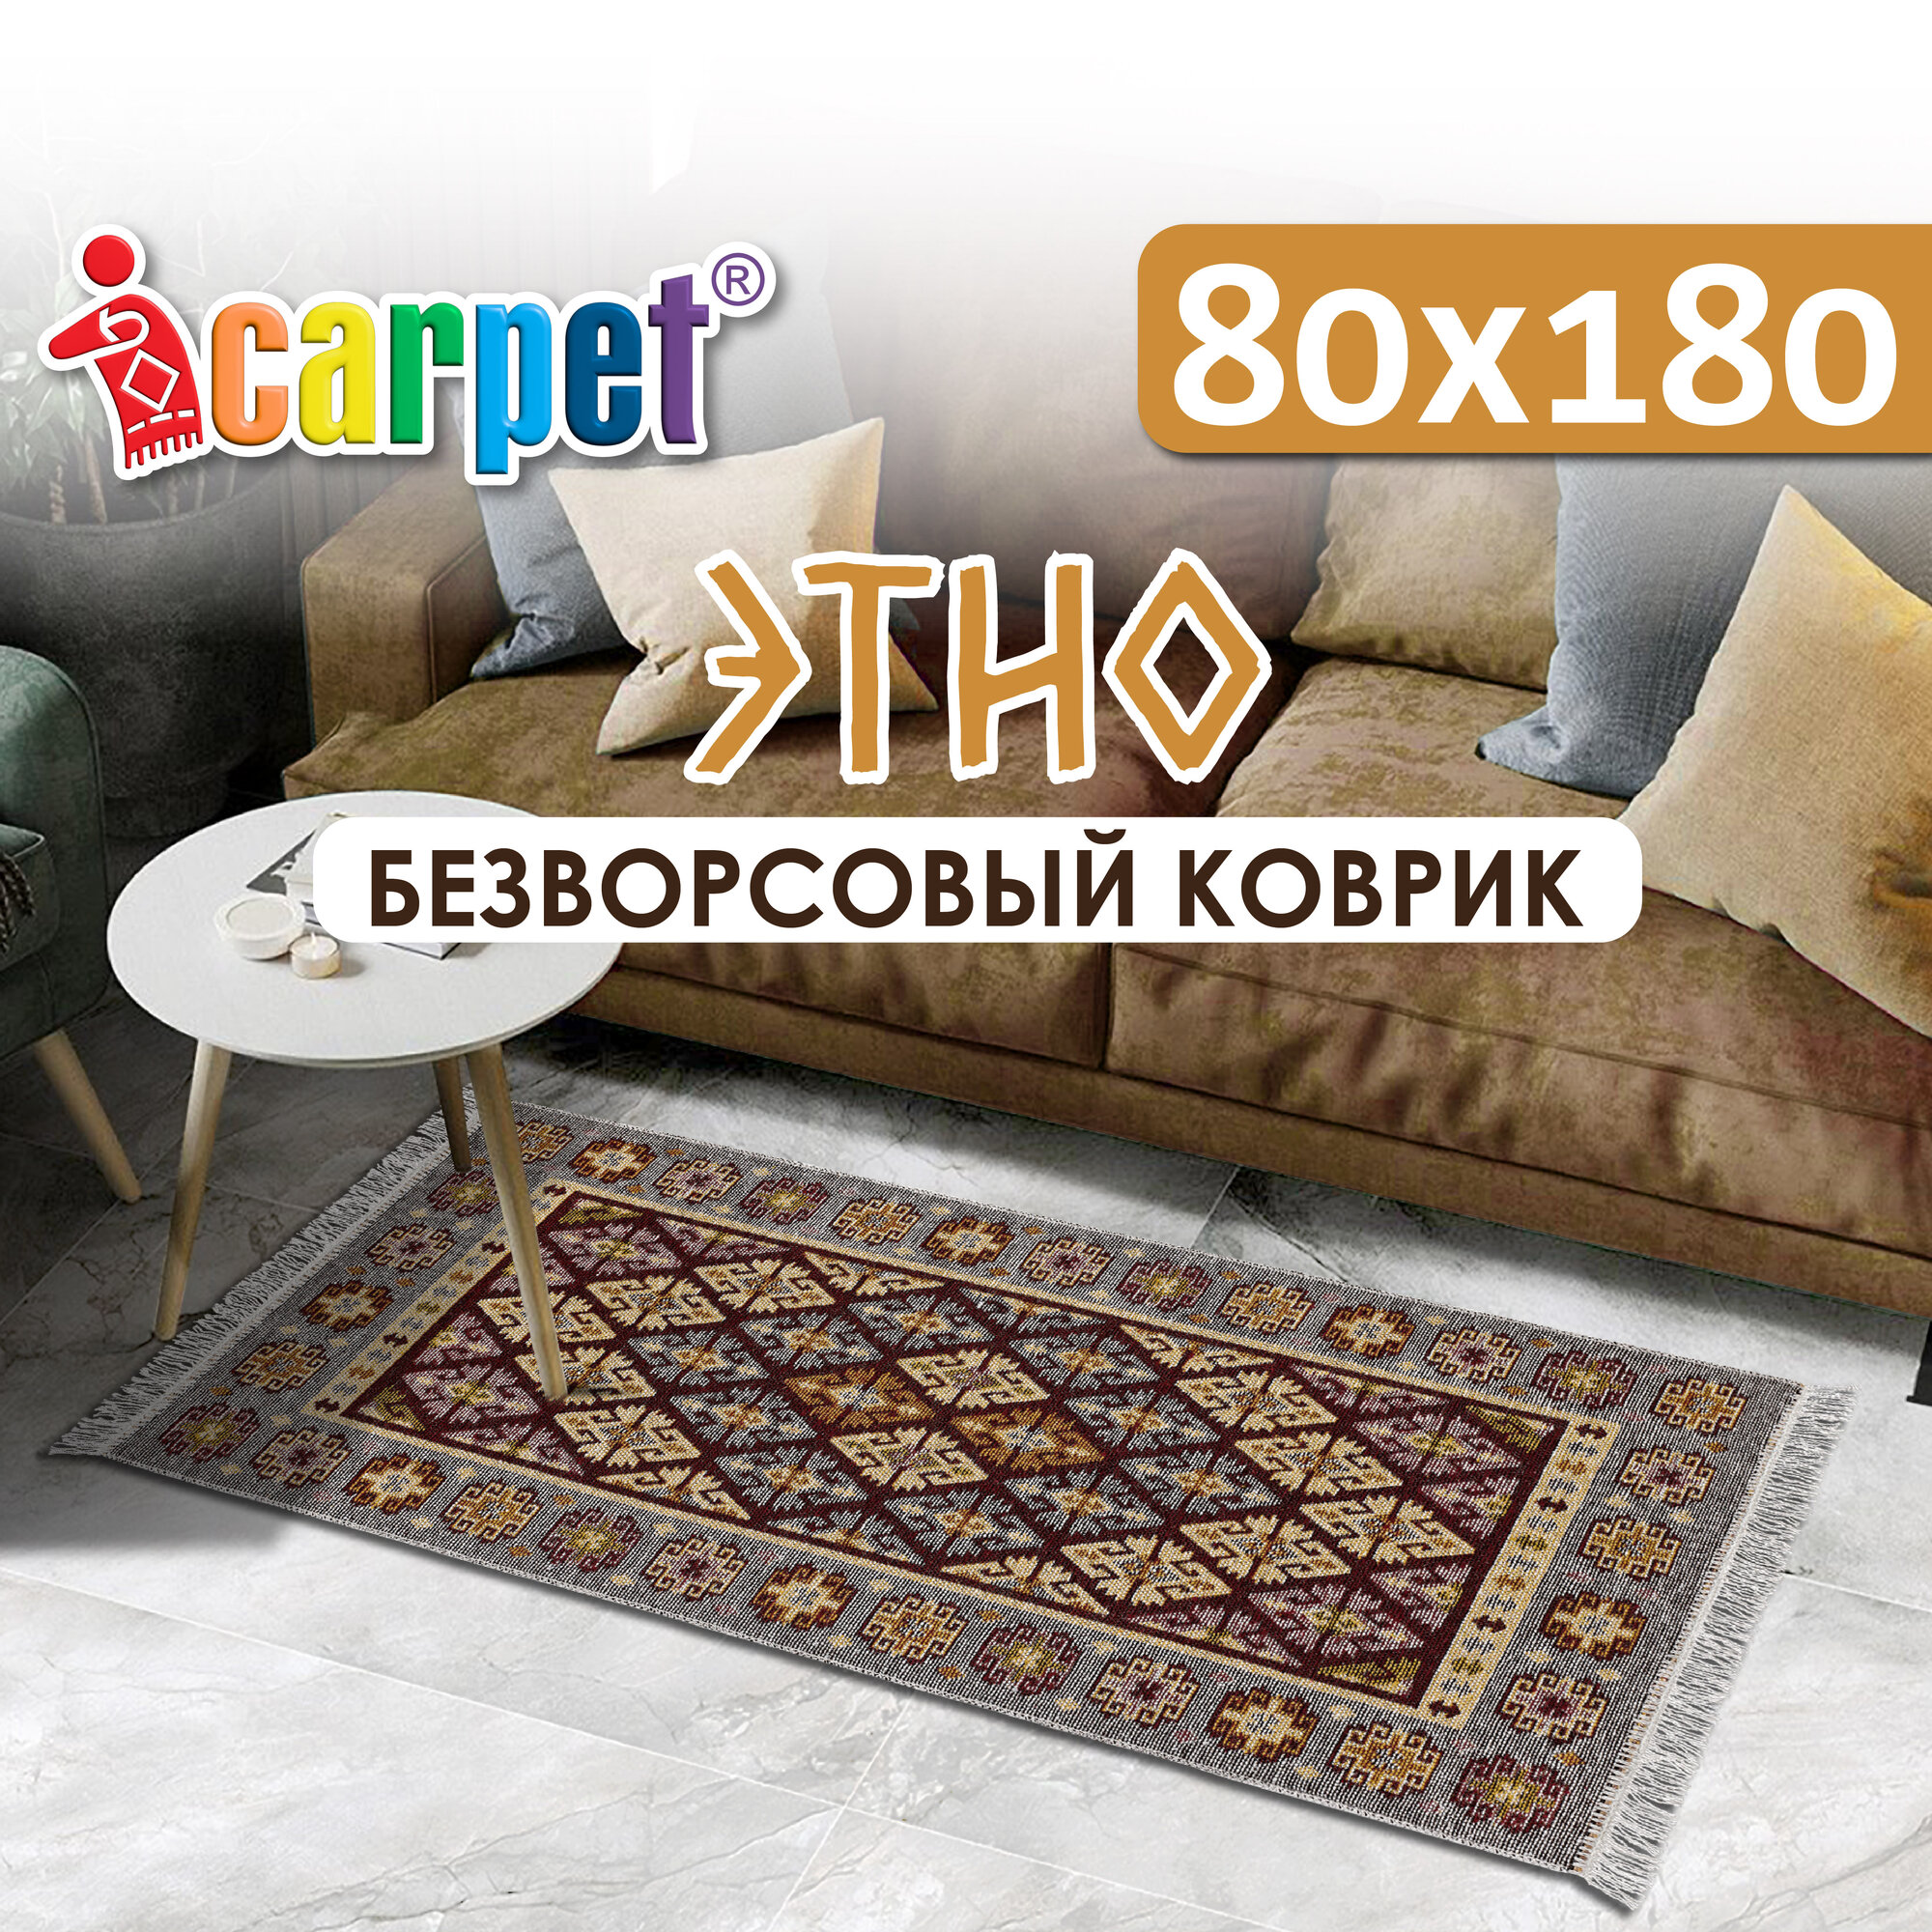 Коврик комнатный хлопковый, безворсовый Icarpet Этно 80х180 яшма(002)